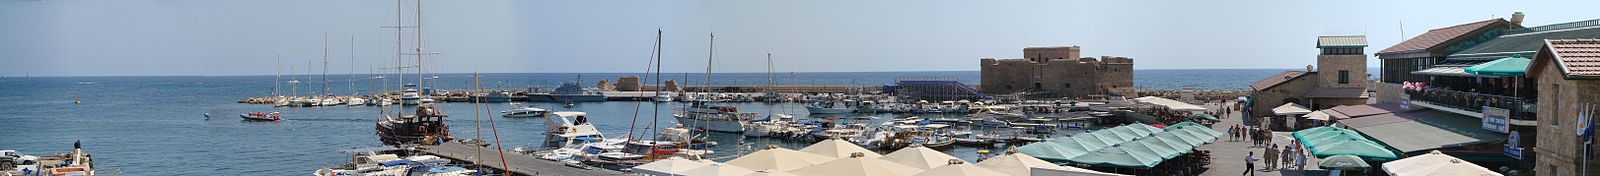 Panorama des Hafens von Paphos